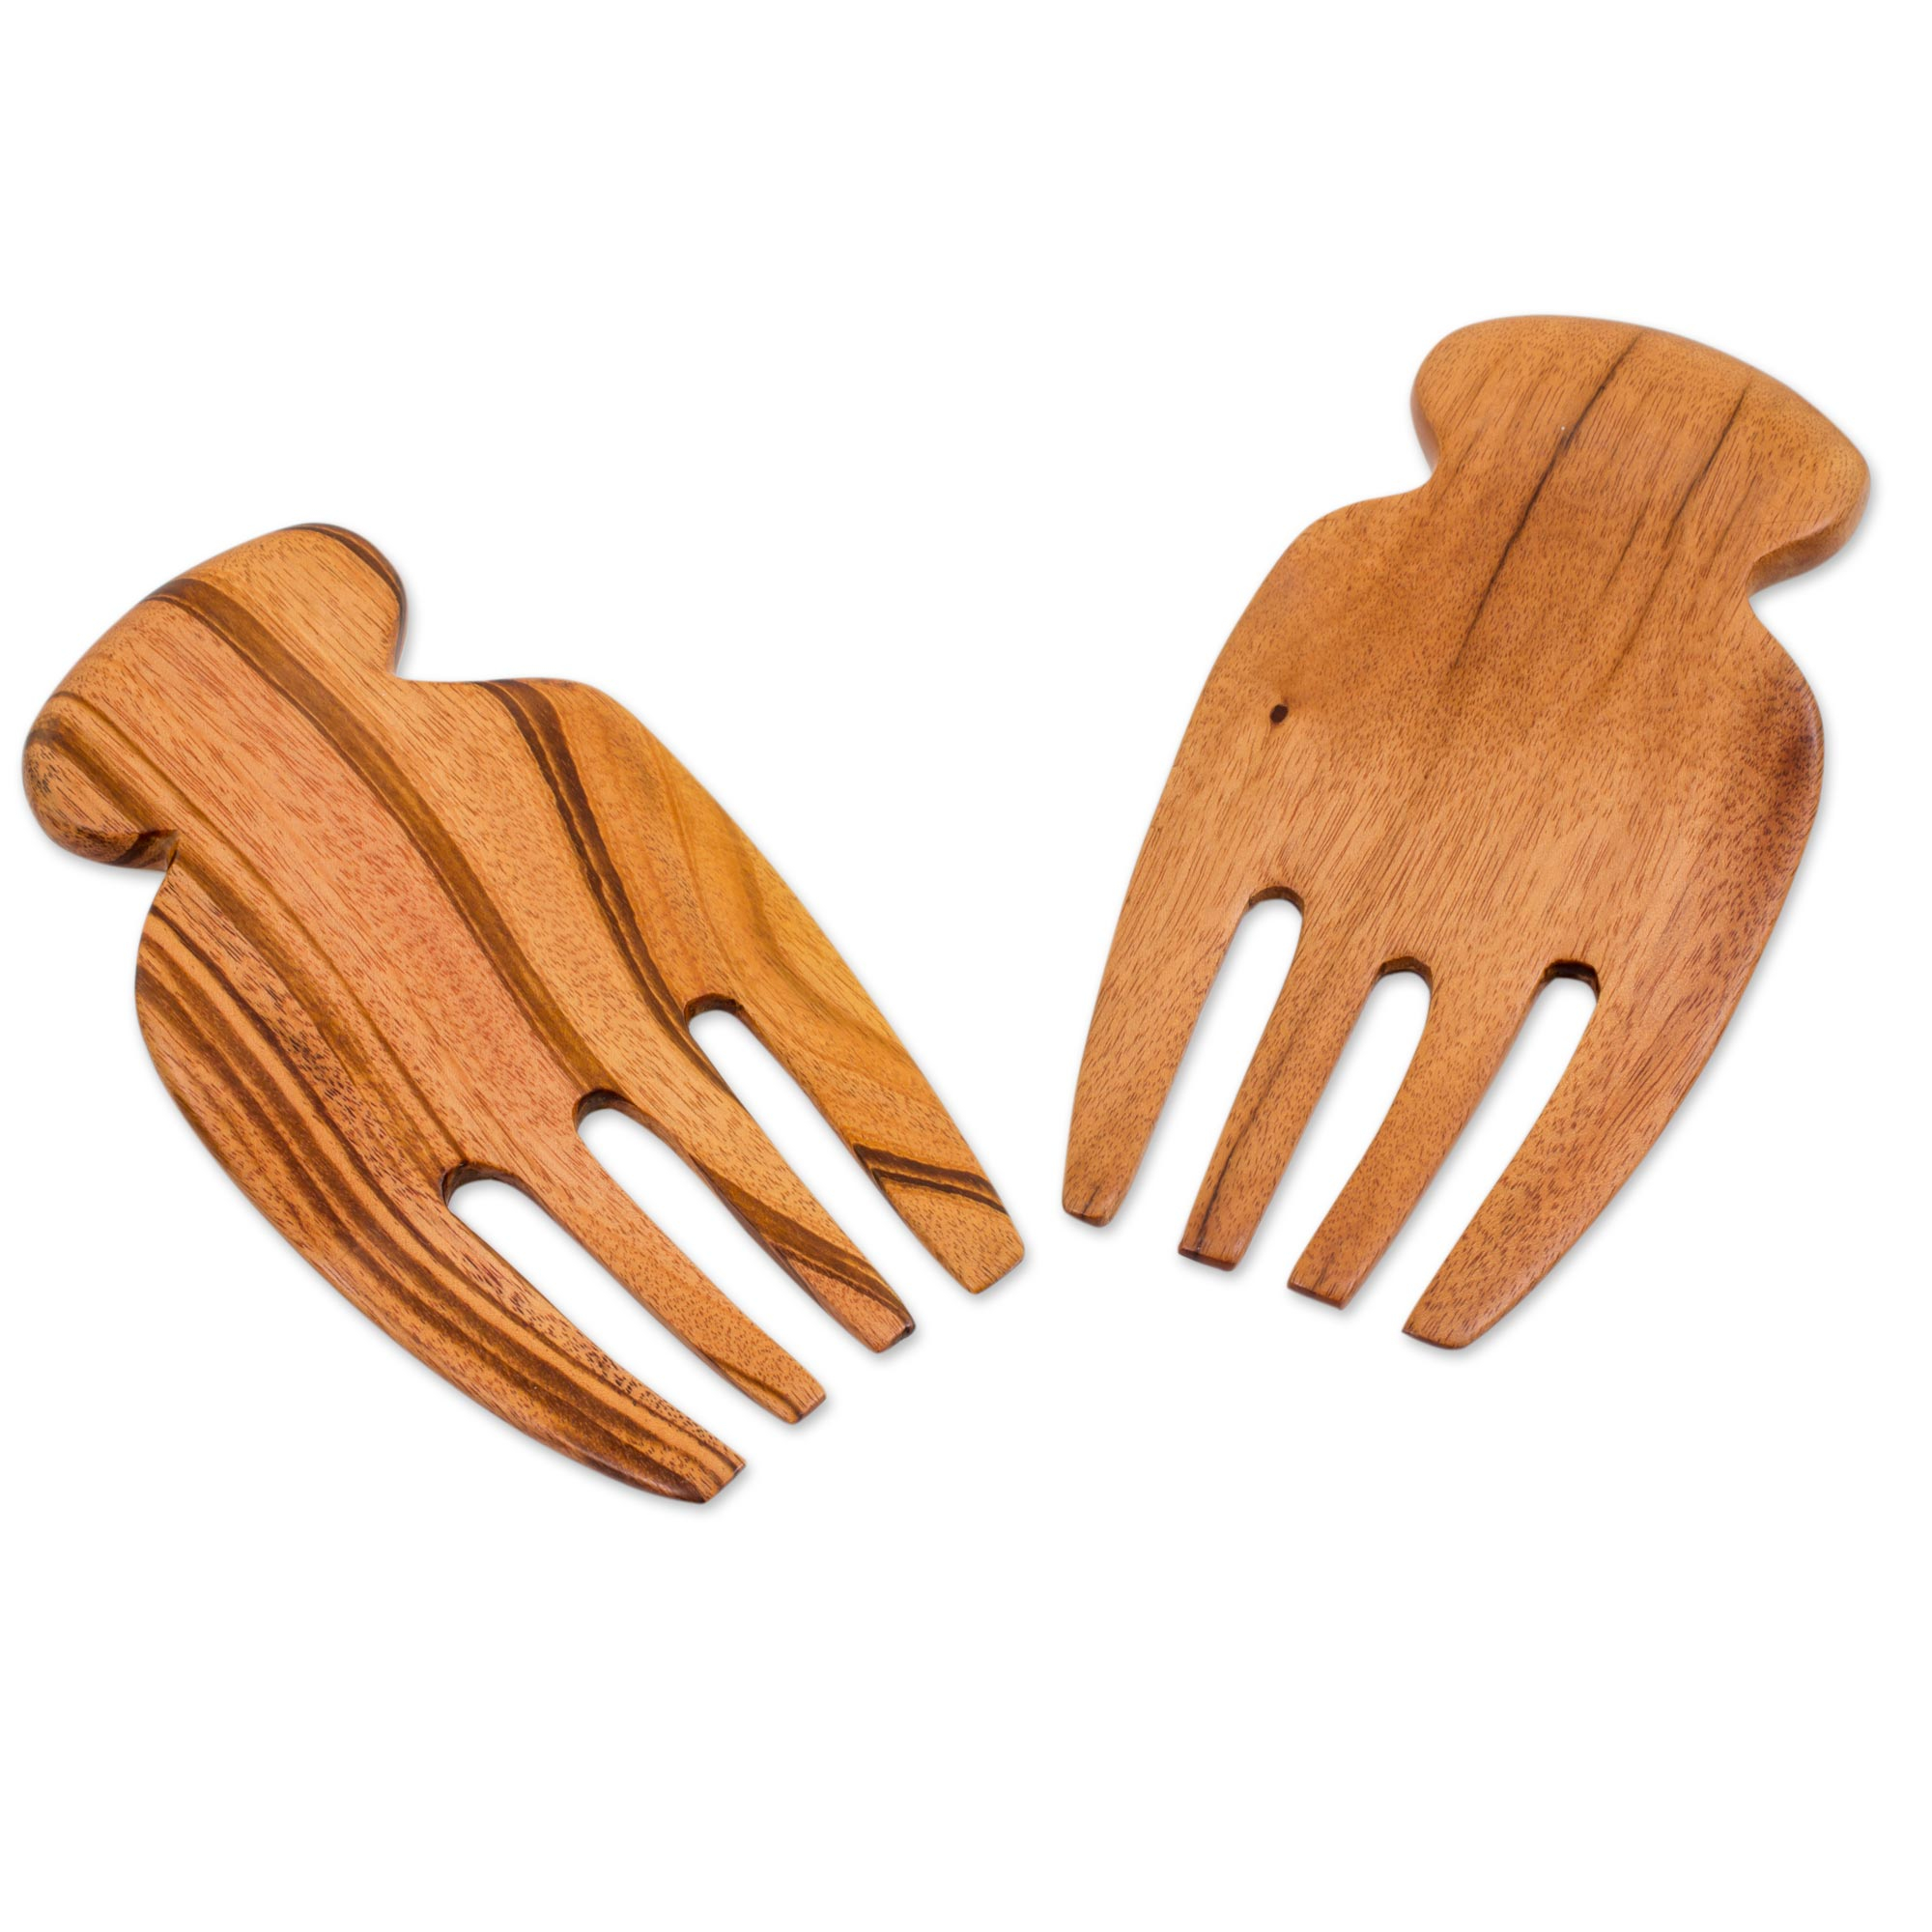 Handmade Hard Wood Fork (Fruit Fork, Salad Fork), Solid Oak Wood (With